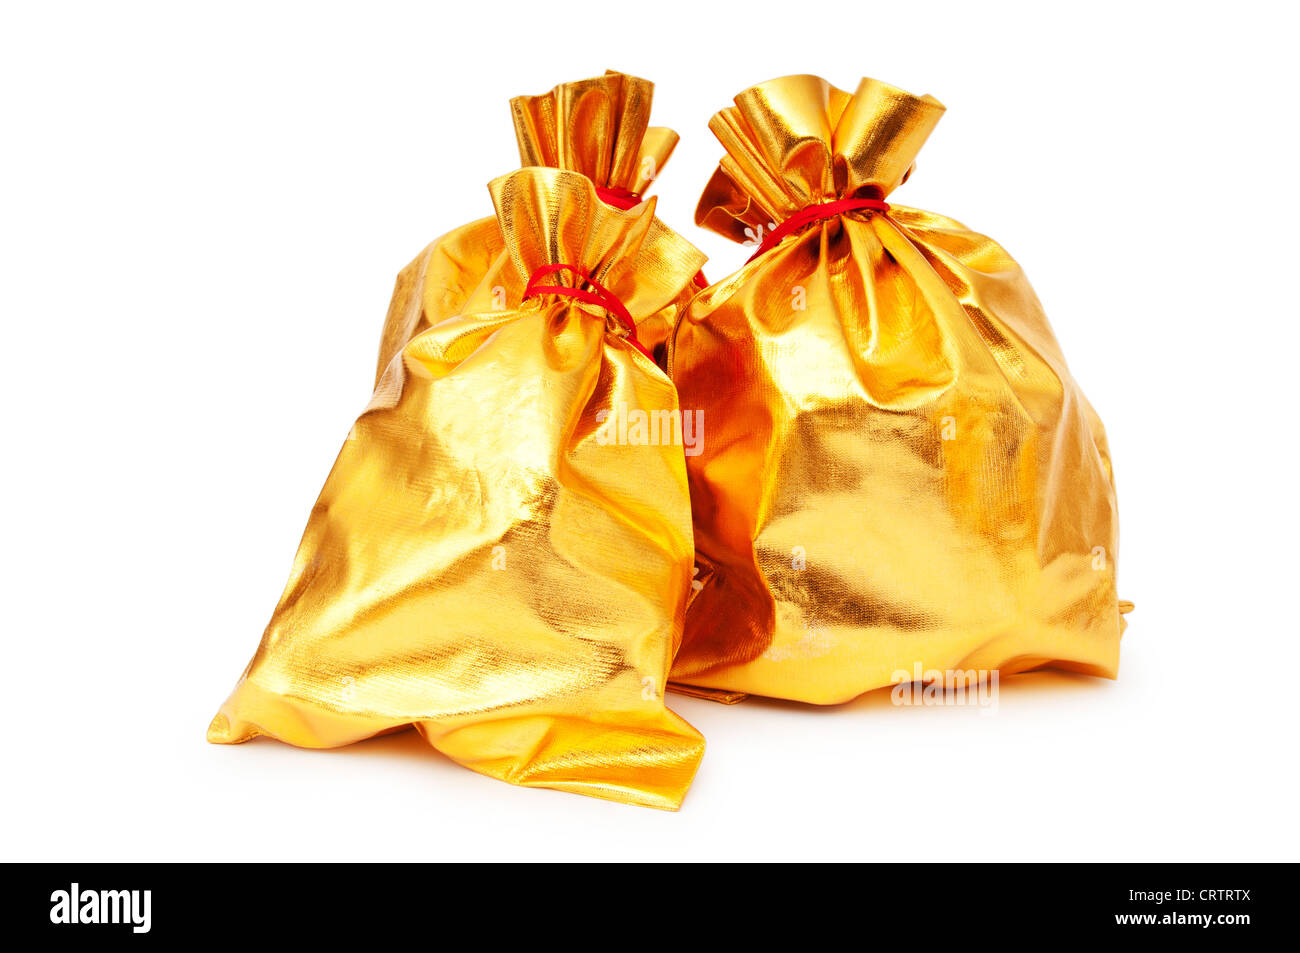 Golden sacks full of something good Stock Photo